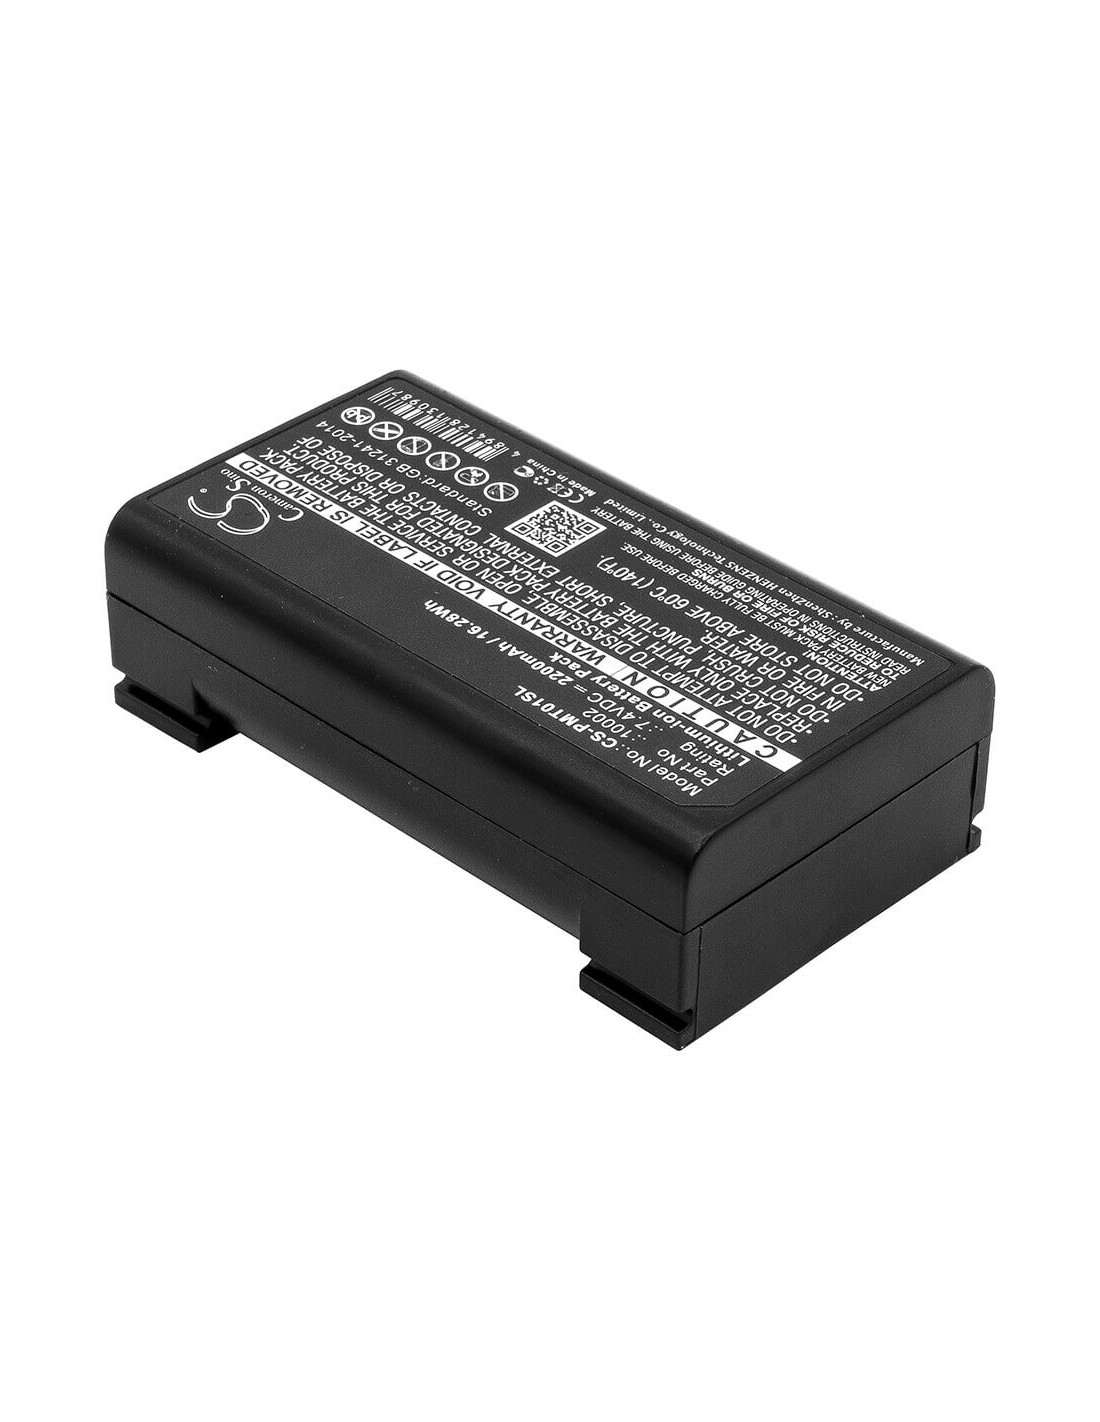 Battery for Pentax, Gps Rtk 7.4V, 2200mAh - 16.28Wh